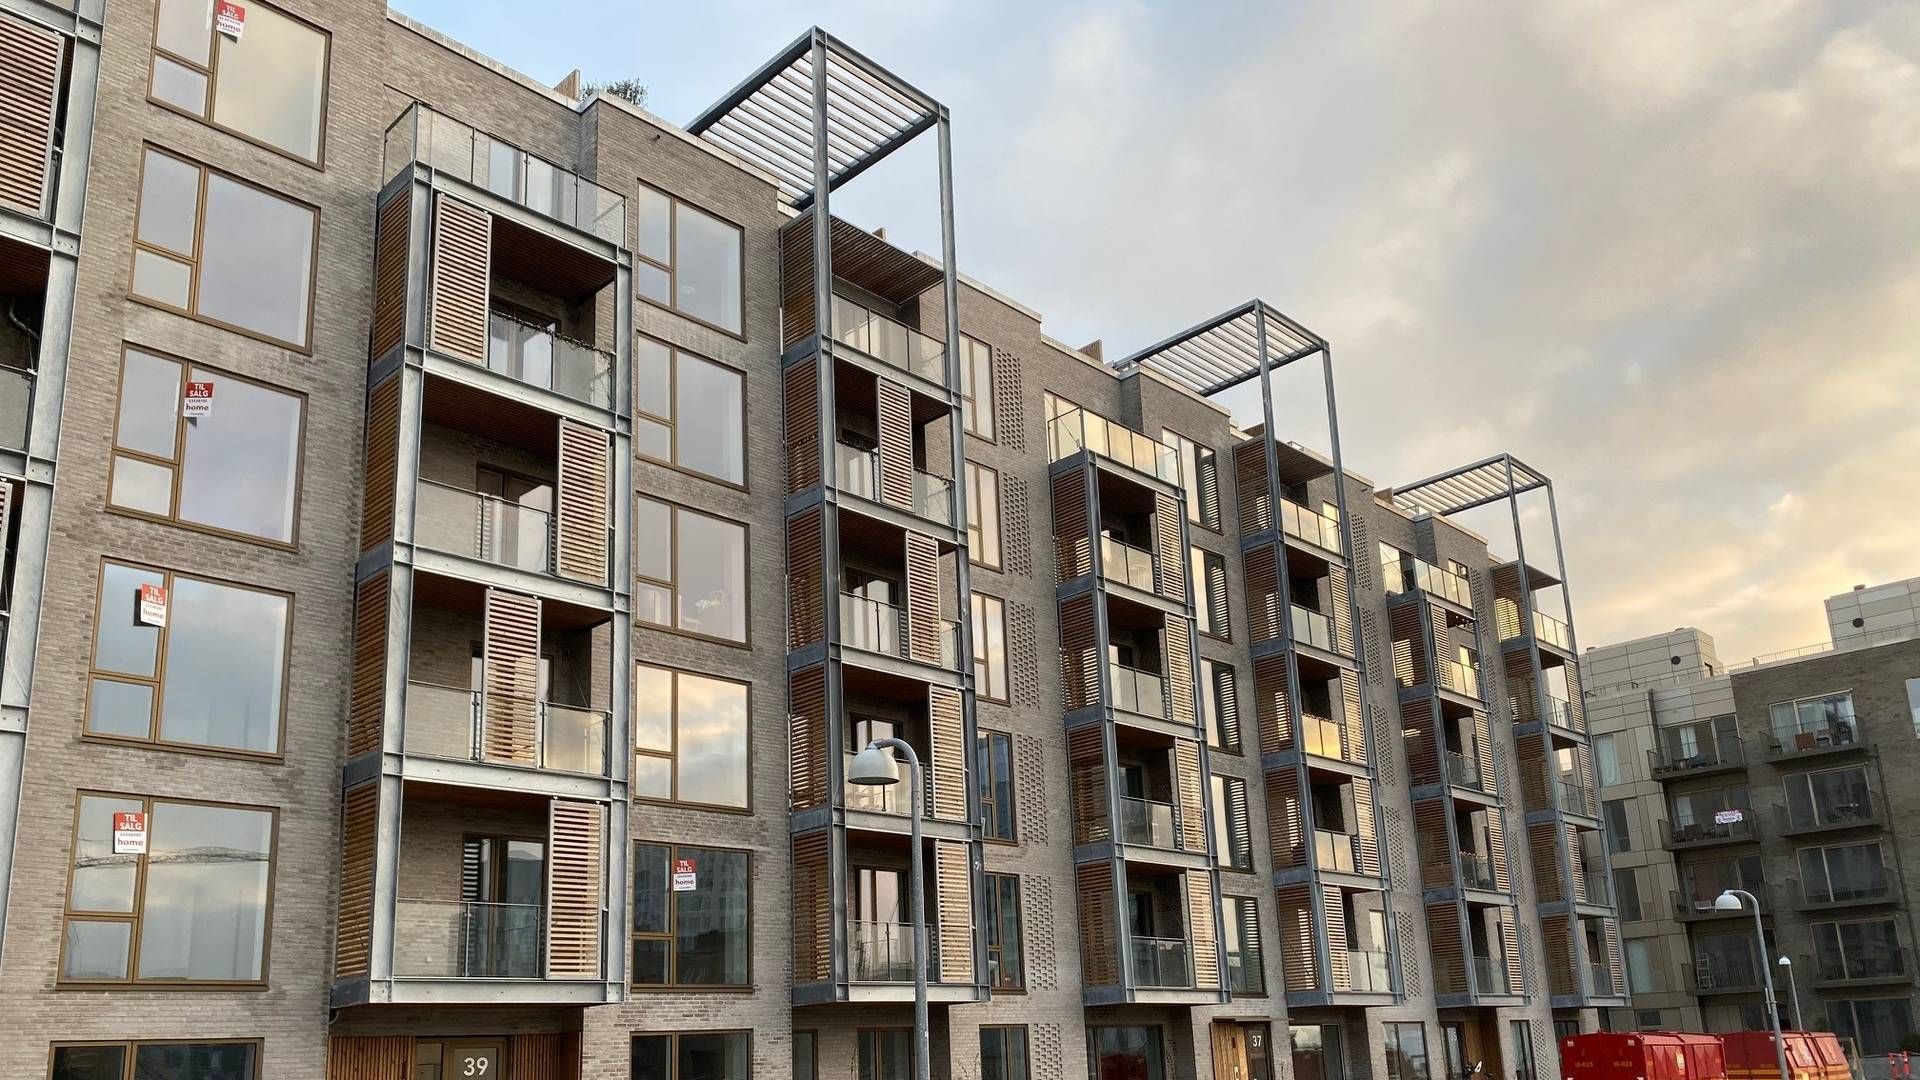 Casas byggeri på Sdr. Ringvej i Brøndby er allerede godt i gang, hvor der bygges 200 boliger. | Foto: Casa PR